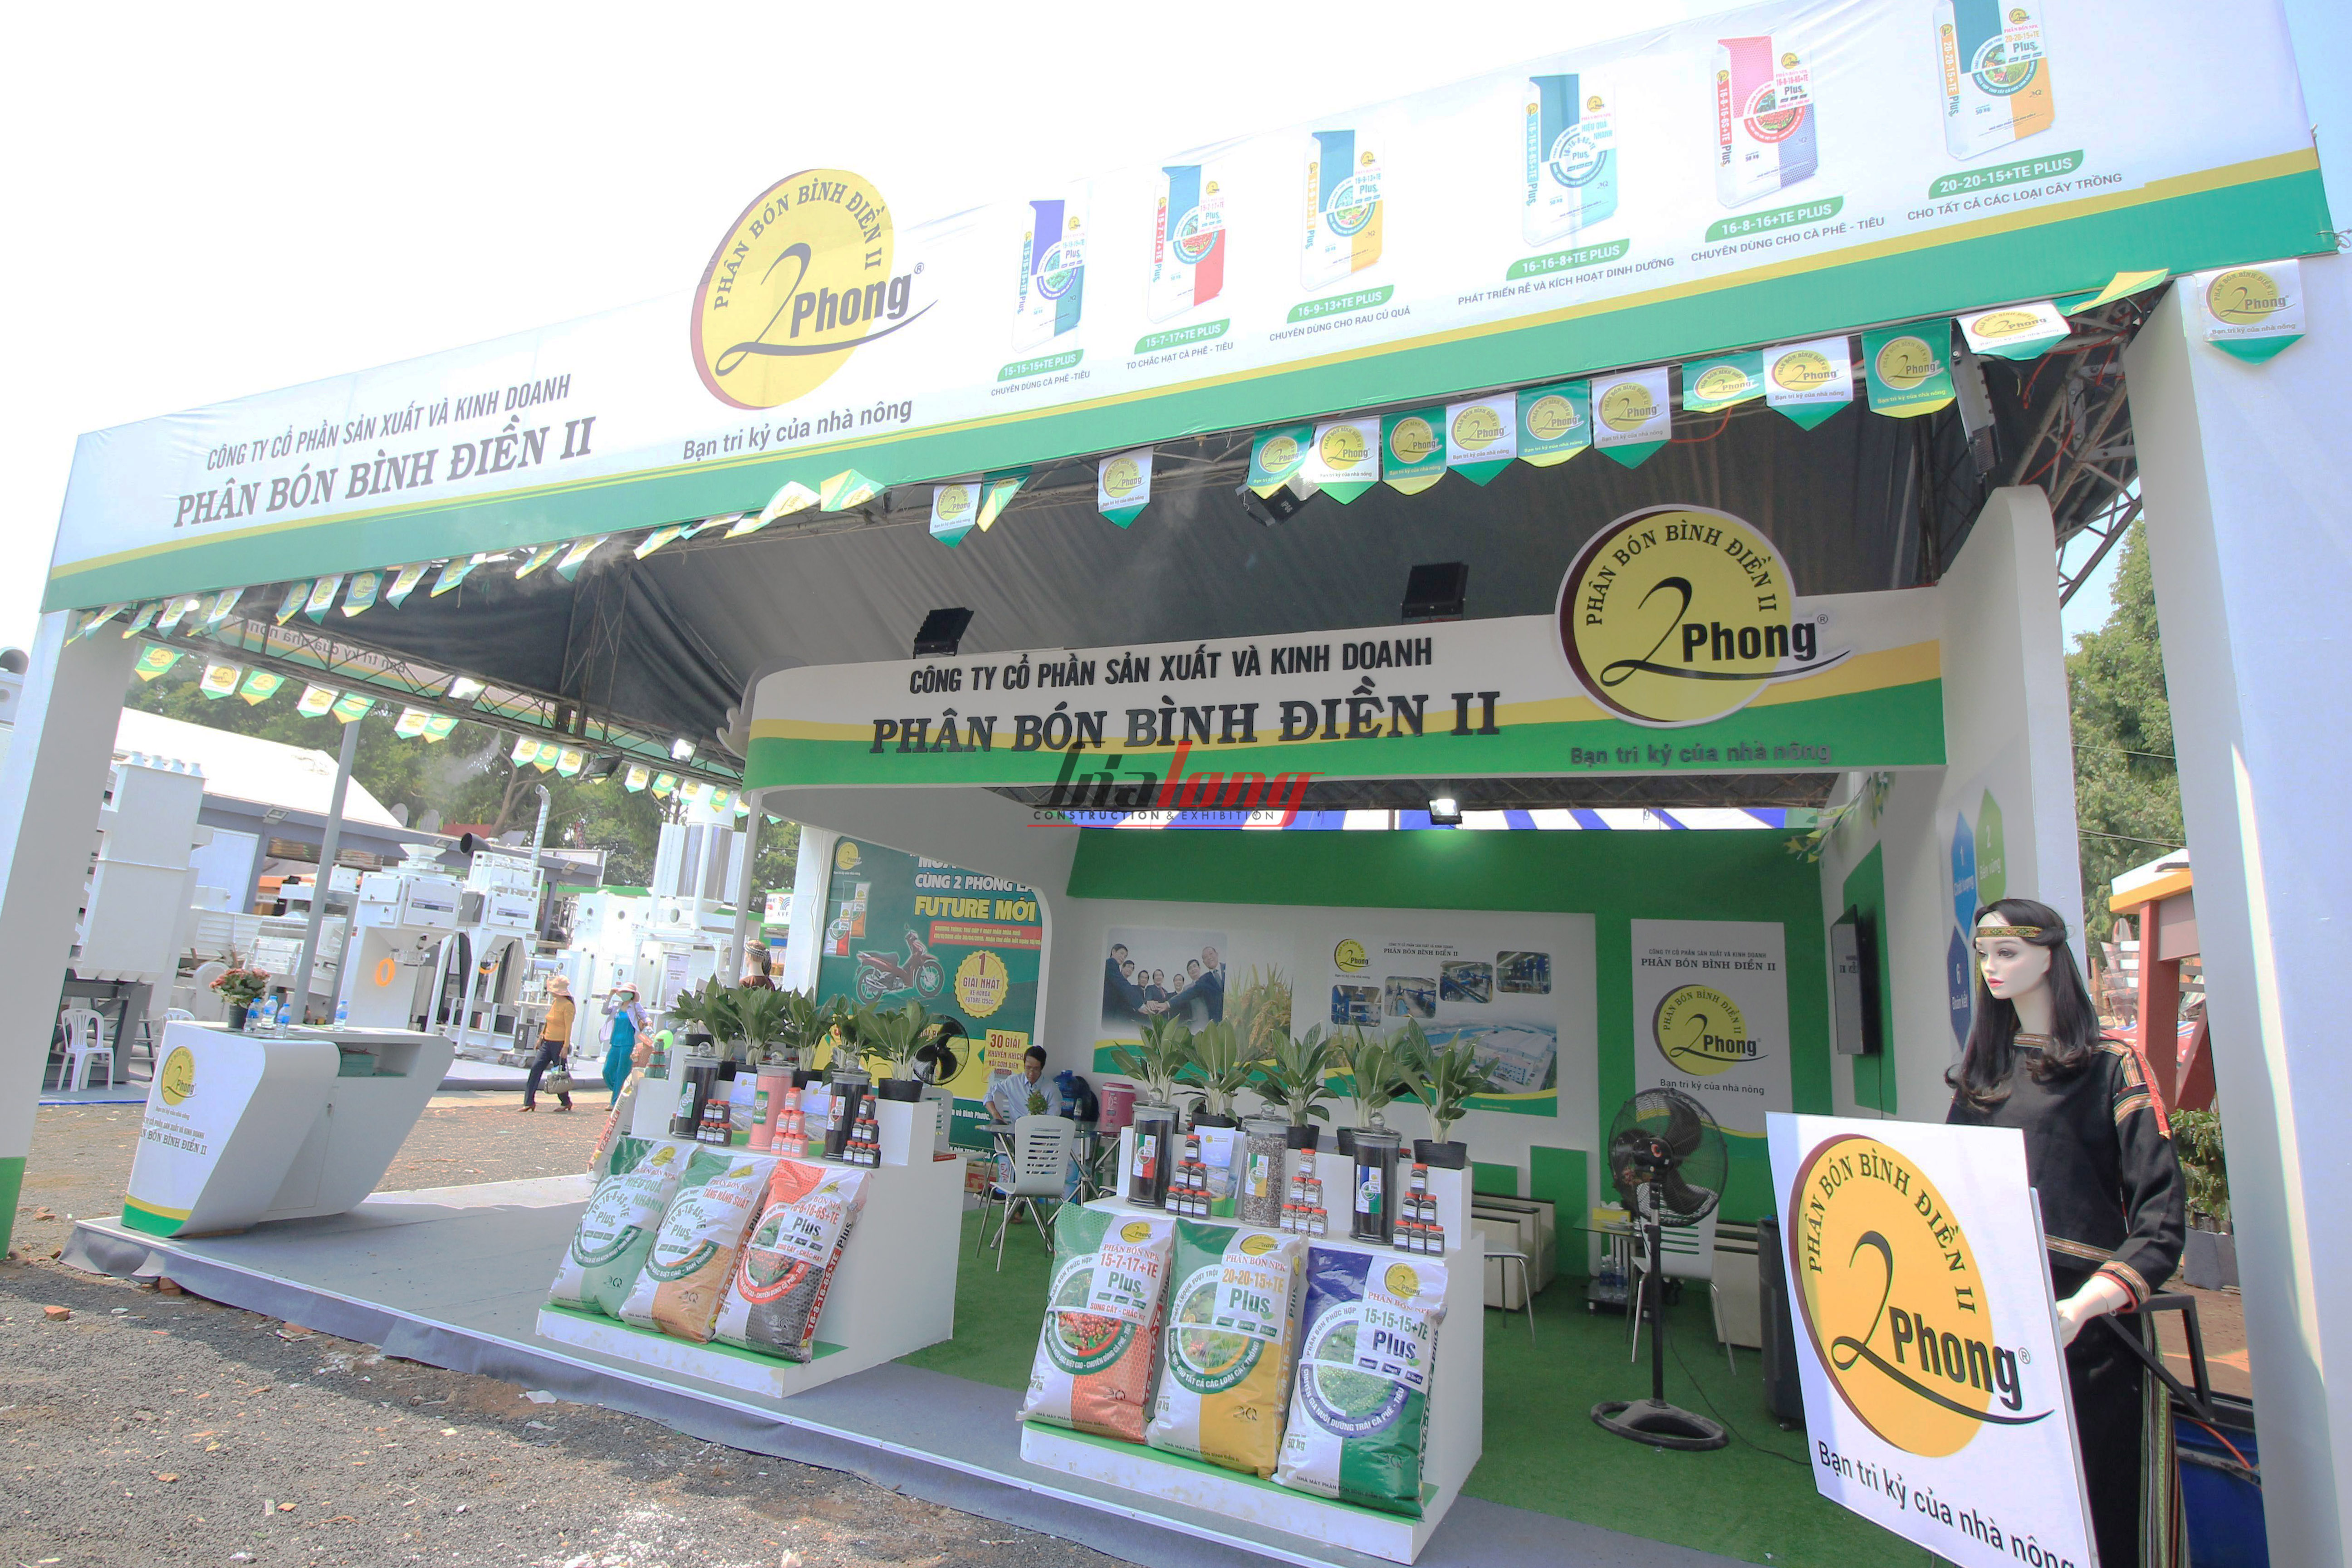 Phan bon Binh Dien - Thi công hội chợ Cà phê Buôn Ma Thuột - Construction of Buon Ma Thuot Coffee fair booth